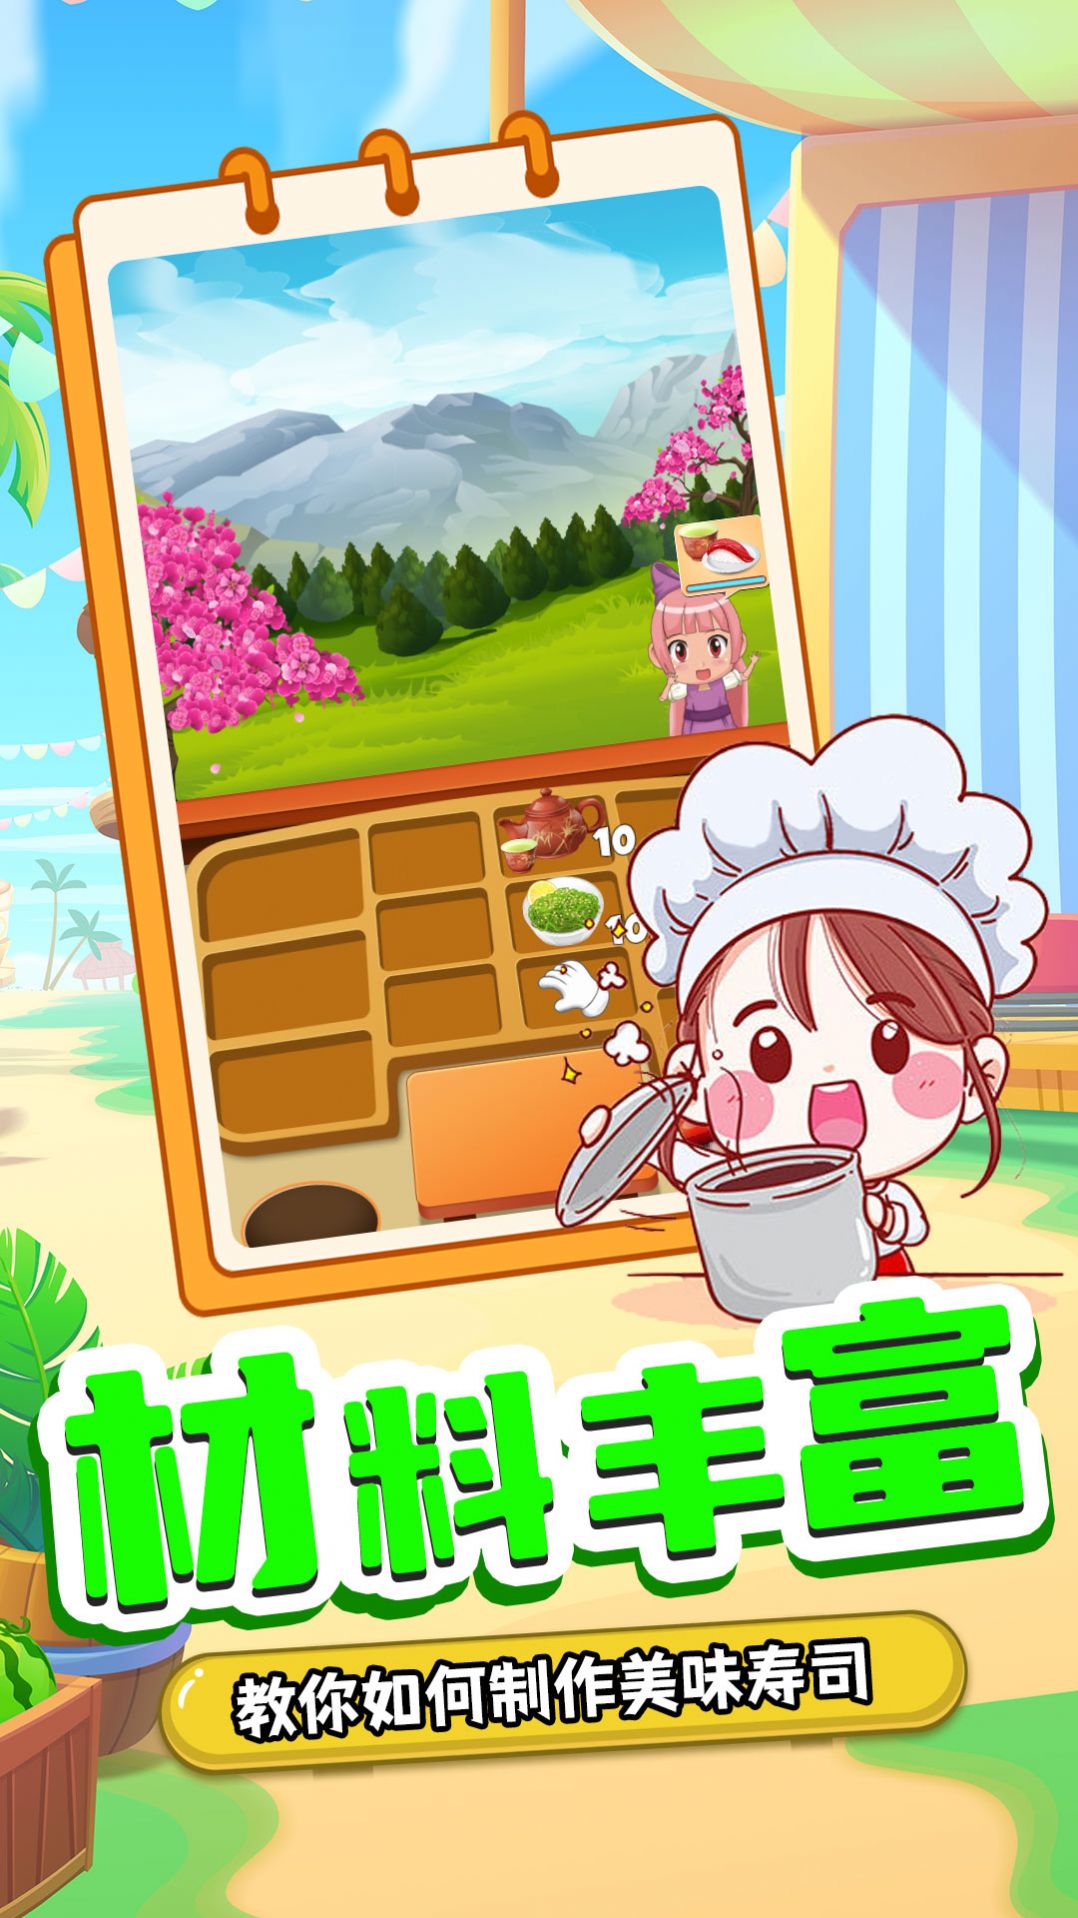 宝宝寿司料理厨房游戏图1